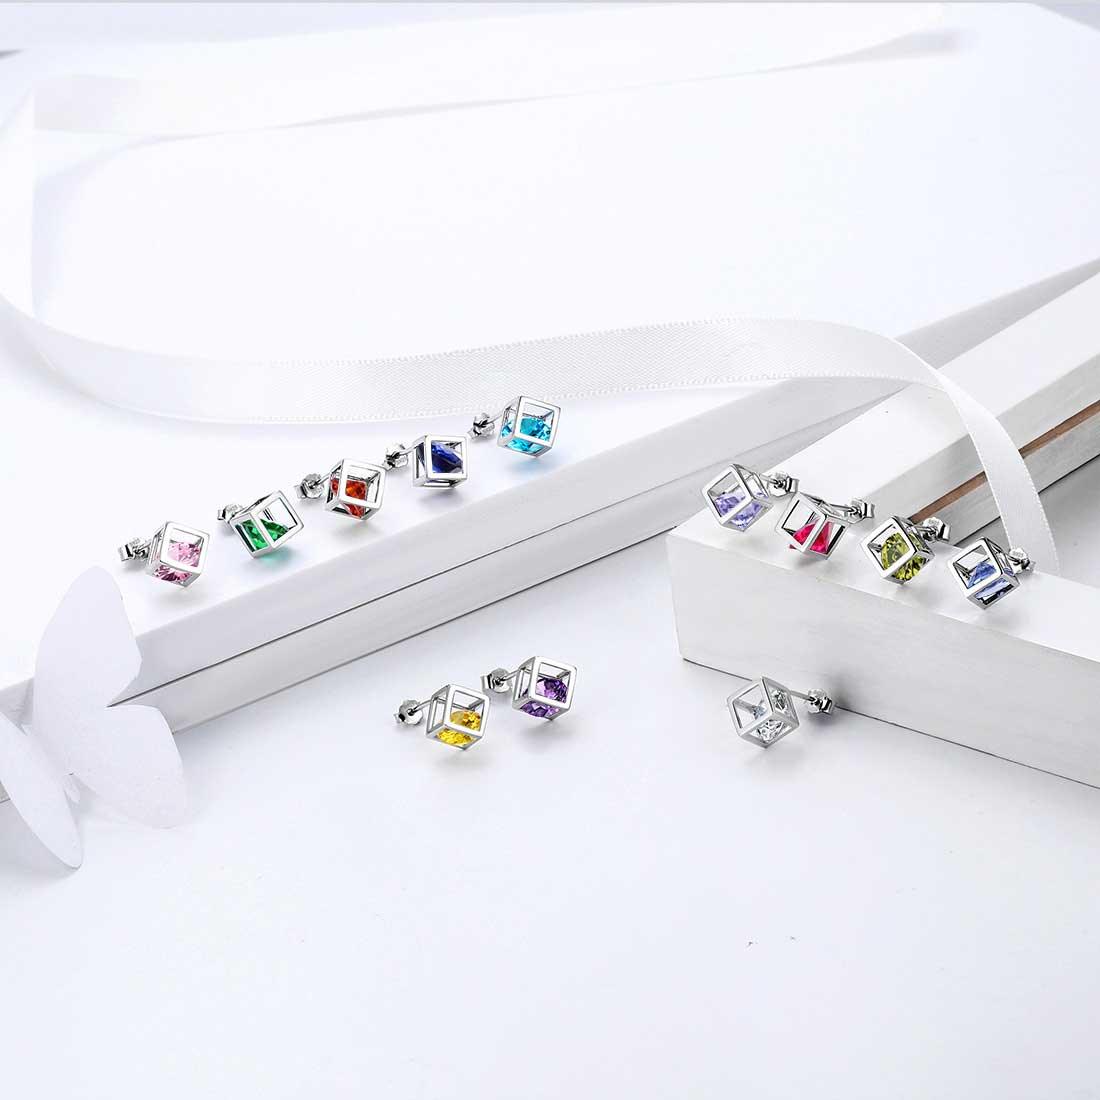 3D Cube Birthstone April Diamond Earrings Sterling Silver - Earrings - Aurora Tears